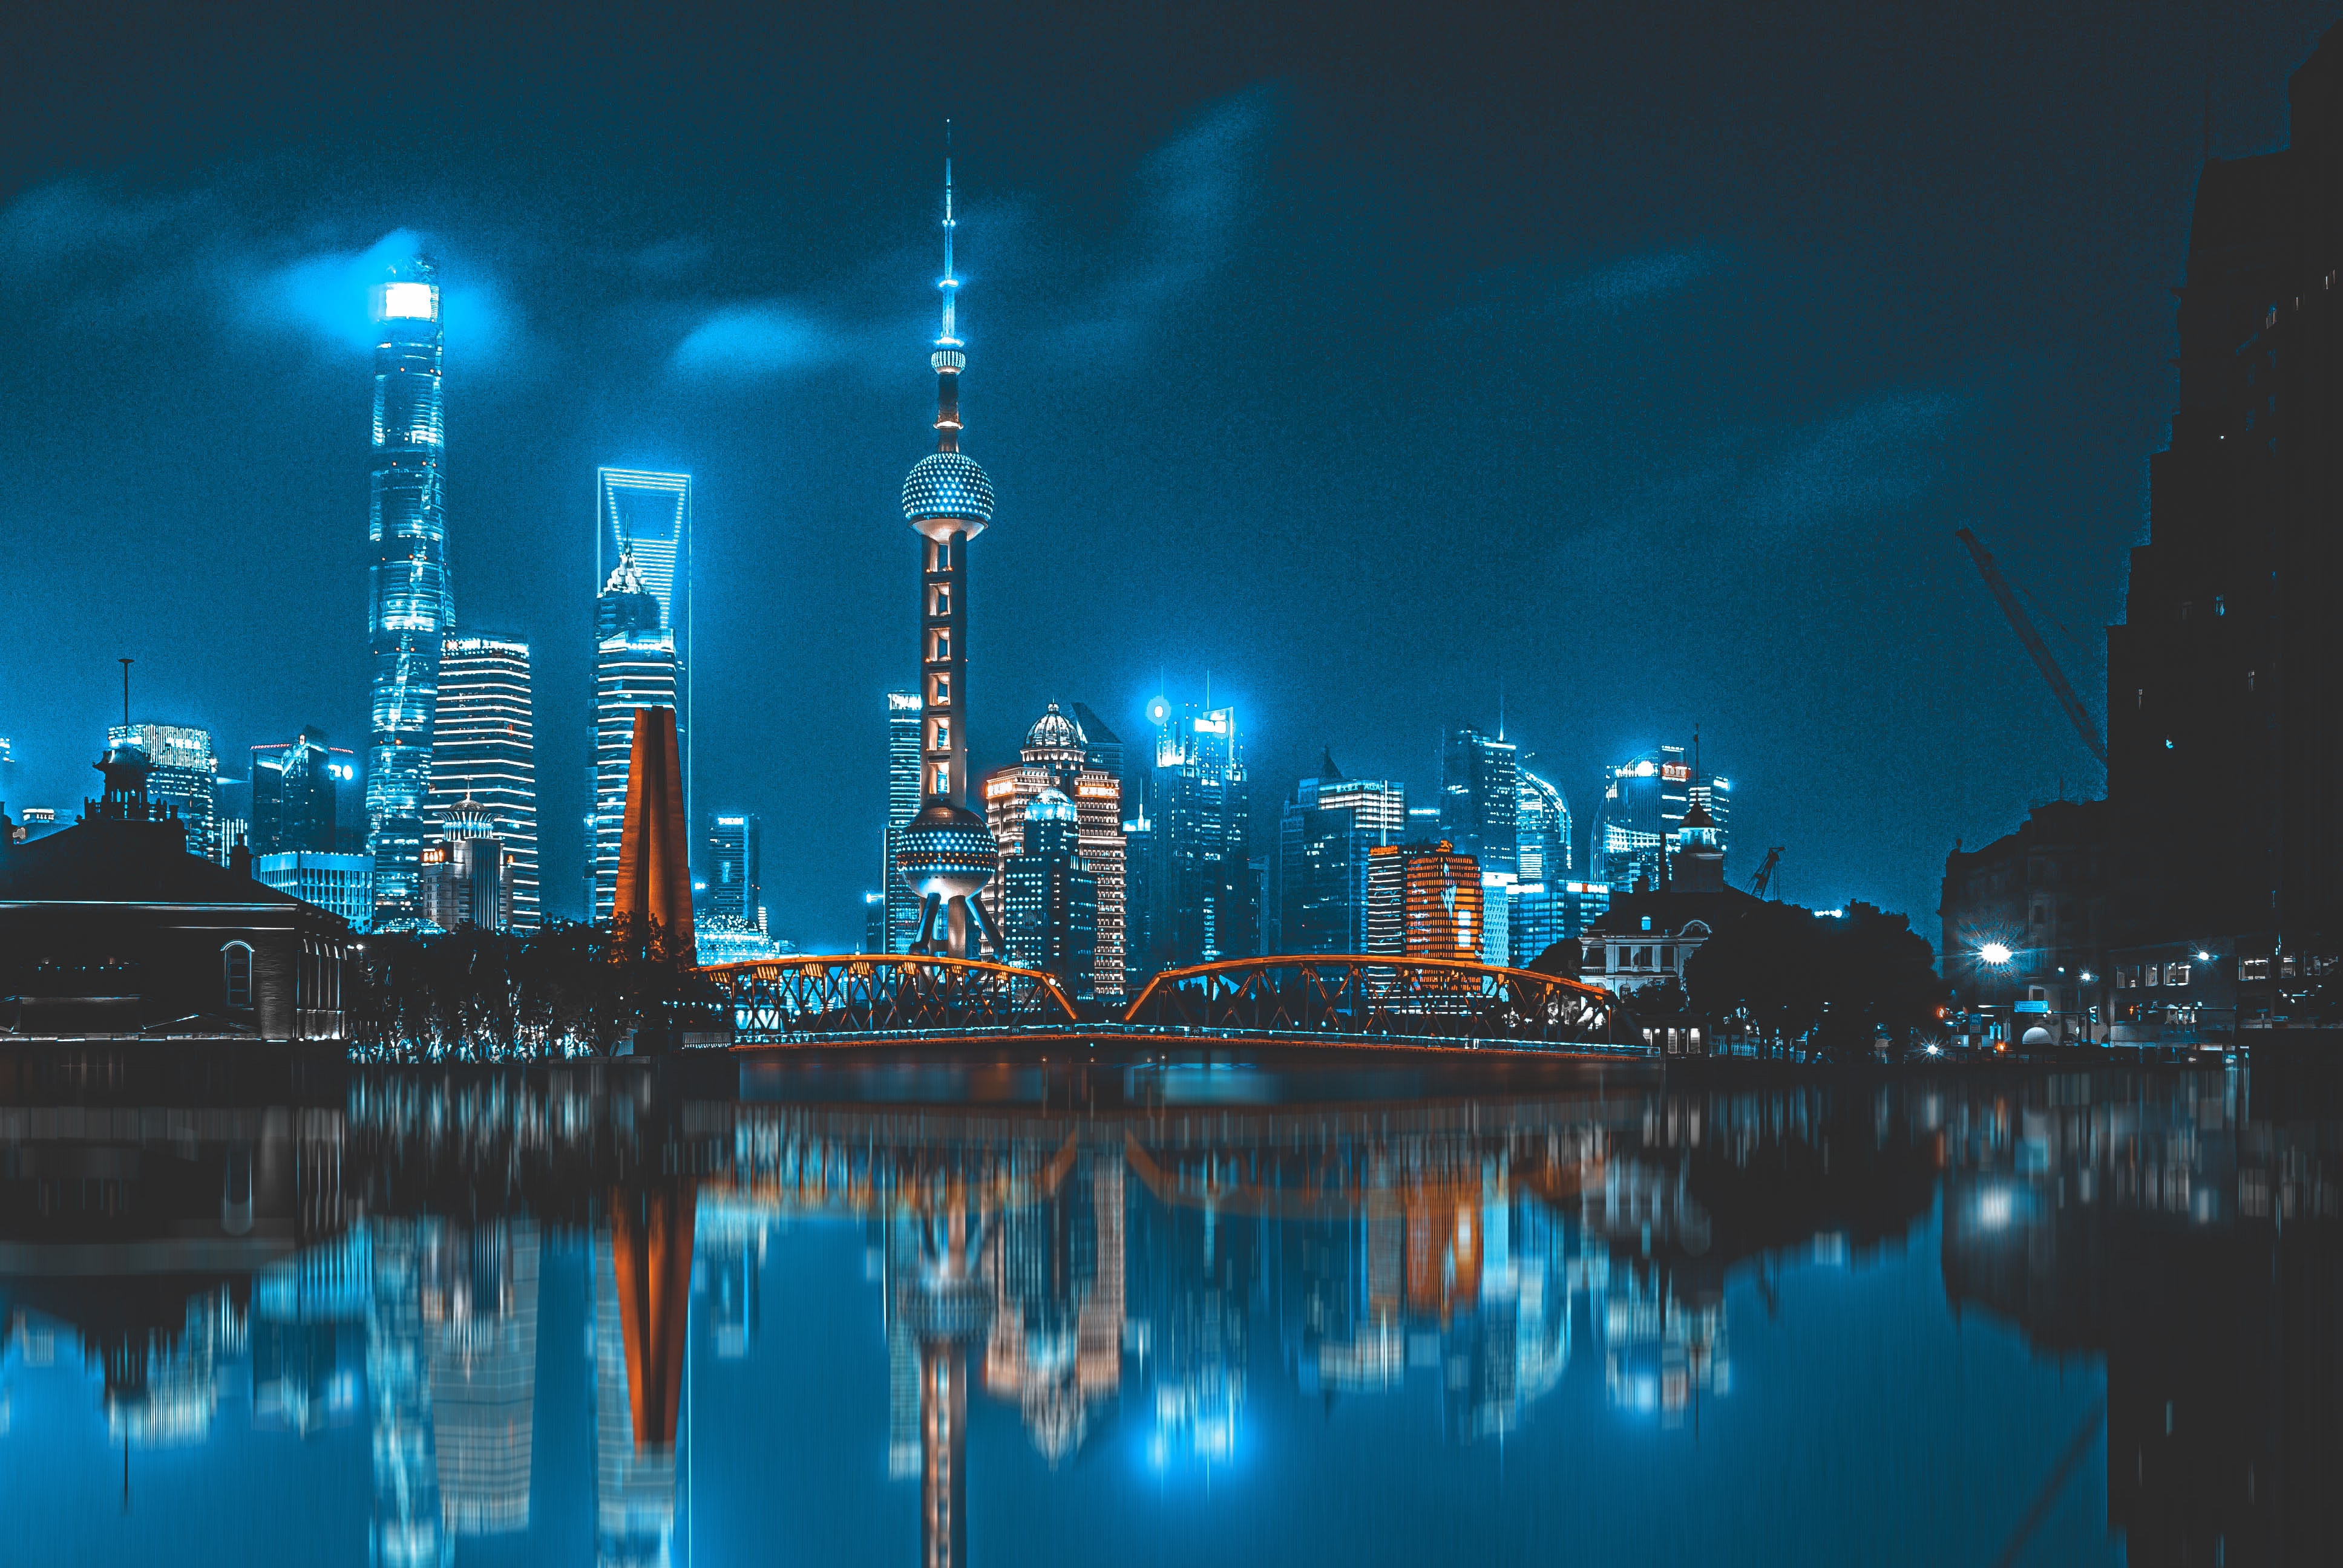 Bund in Shanghai at night